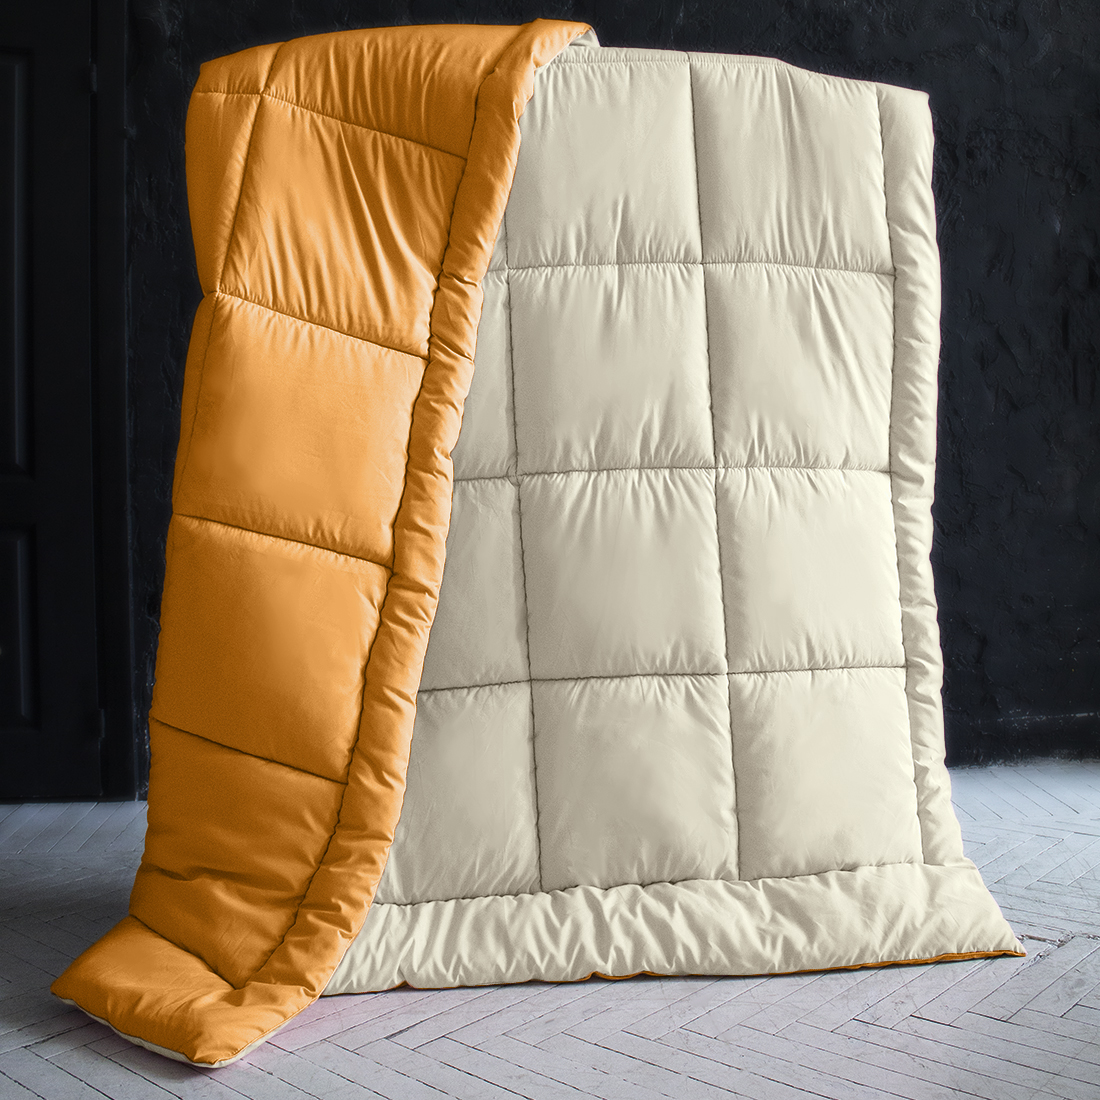 Одеяло MultiColor цвет: ванильный, оранжевый (140х205 см), размер 140х205 см pva320025 Одеяло MultiColor цвет: ванильный, оранжевый (140х205 см) - фото 1